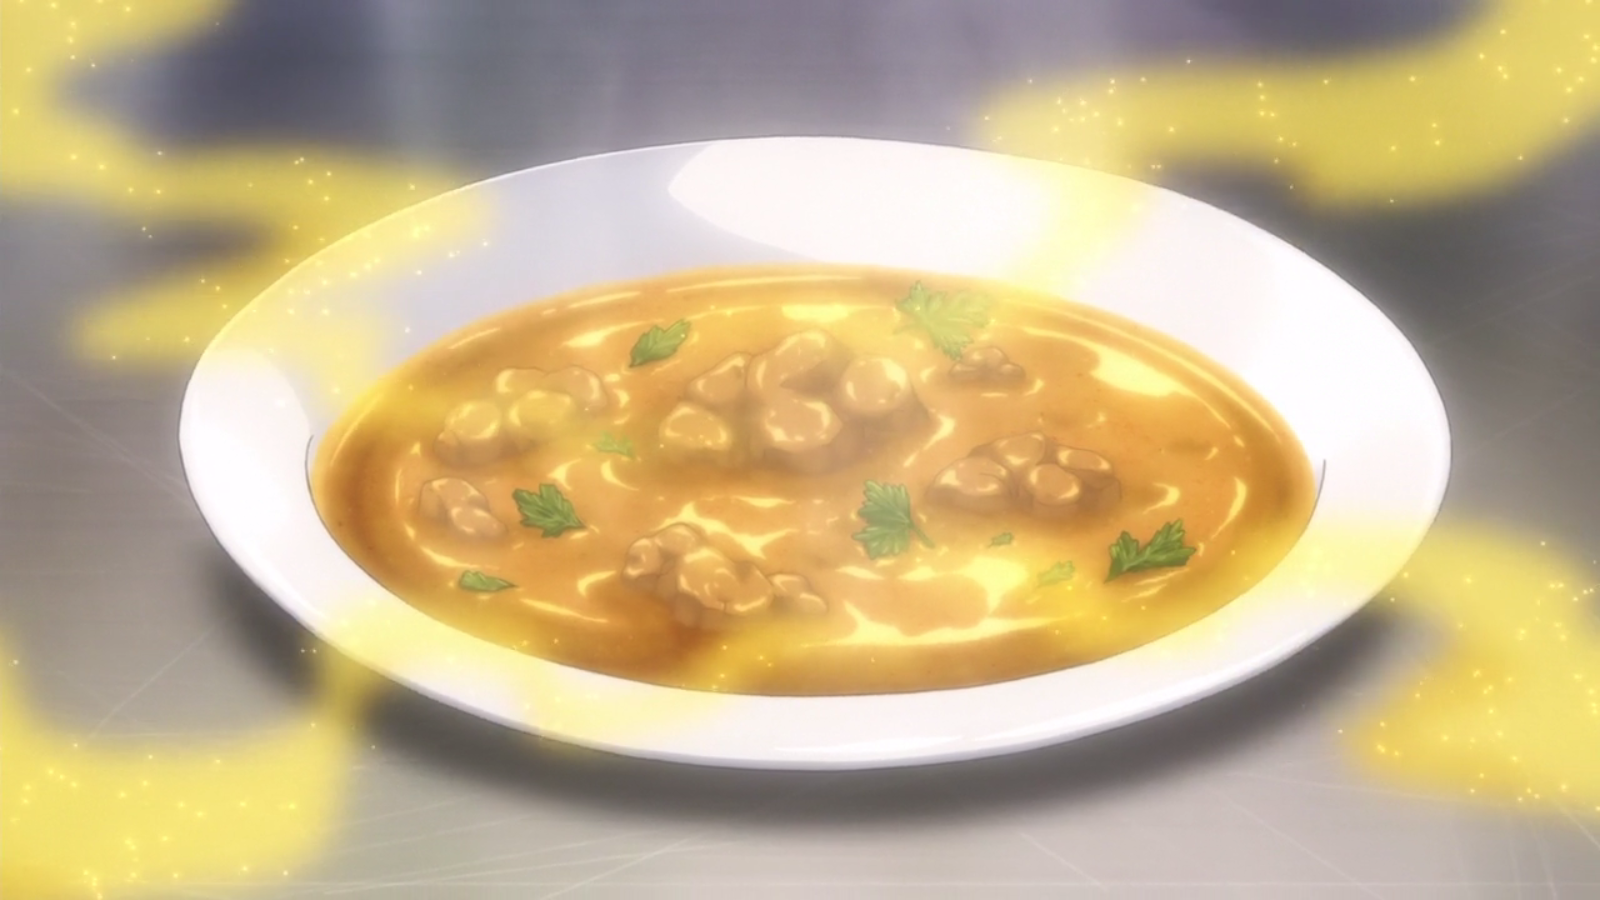 Itadakimasu Anime! | Food, Creative food, Fairytale food